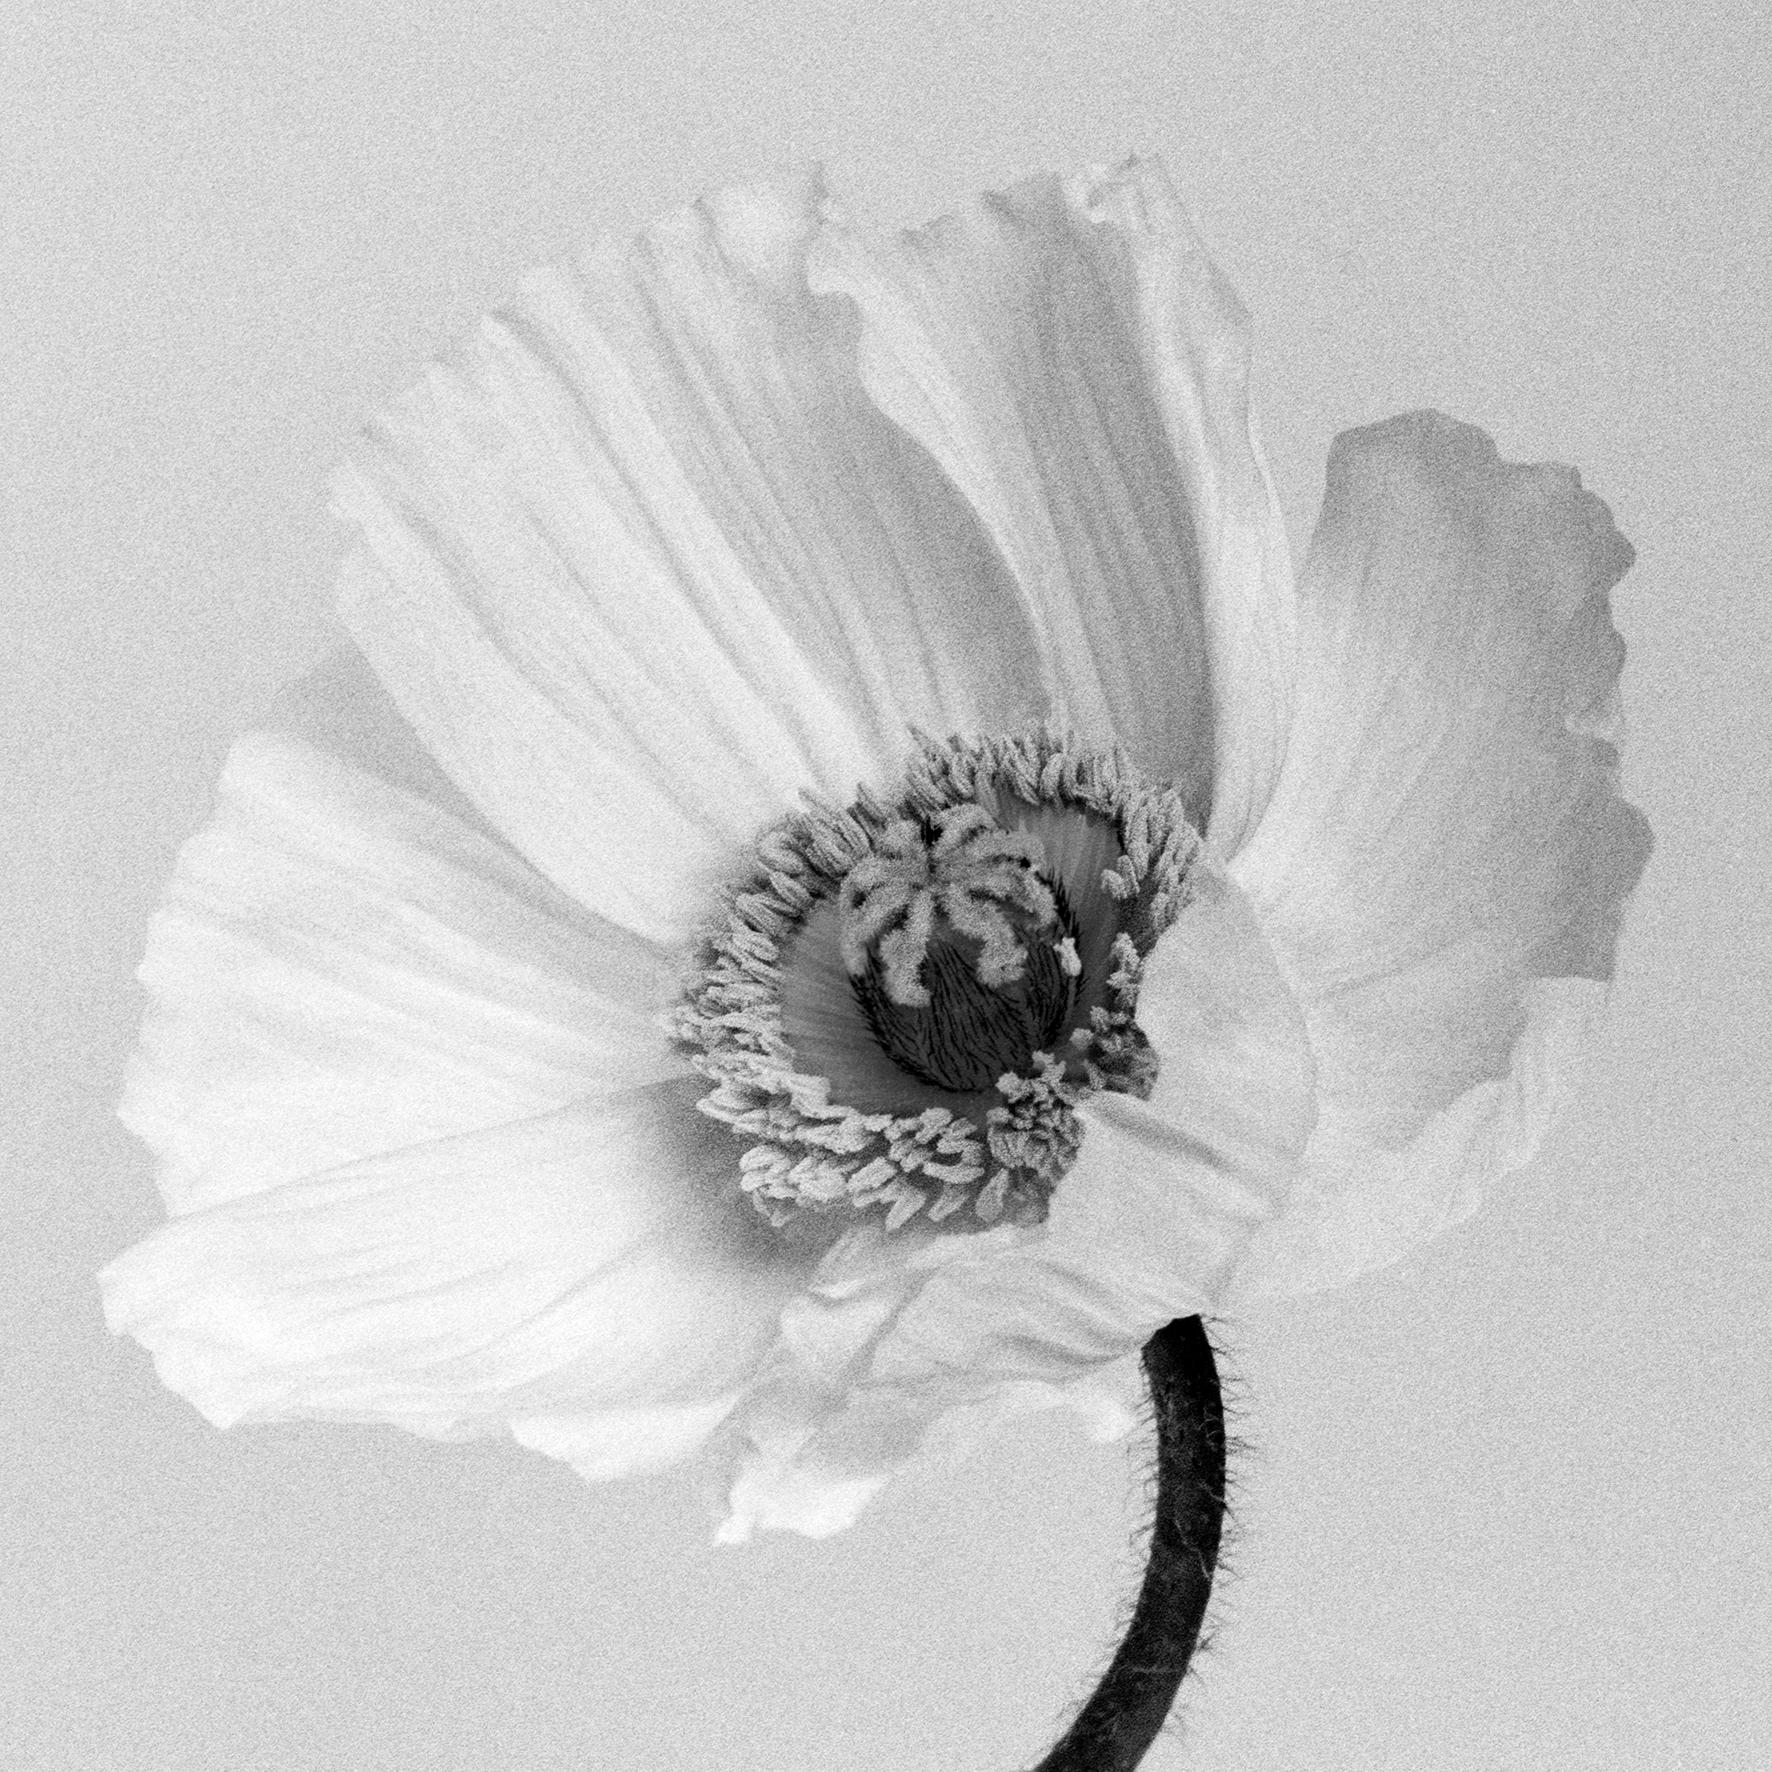 Ugne Pouwell Black and White Photograph – Poppy no.2 - Analogue Schwarz-Weiß-Blumenfotografie in Schwarz-Weiß, limitierte Auflage von 15 Stück